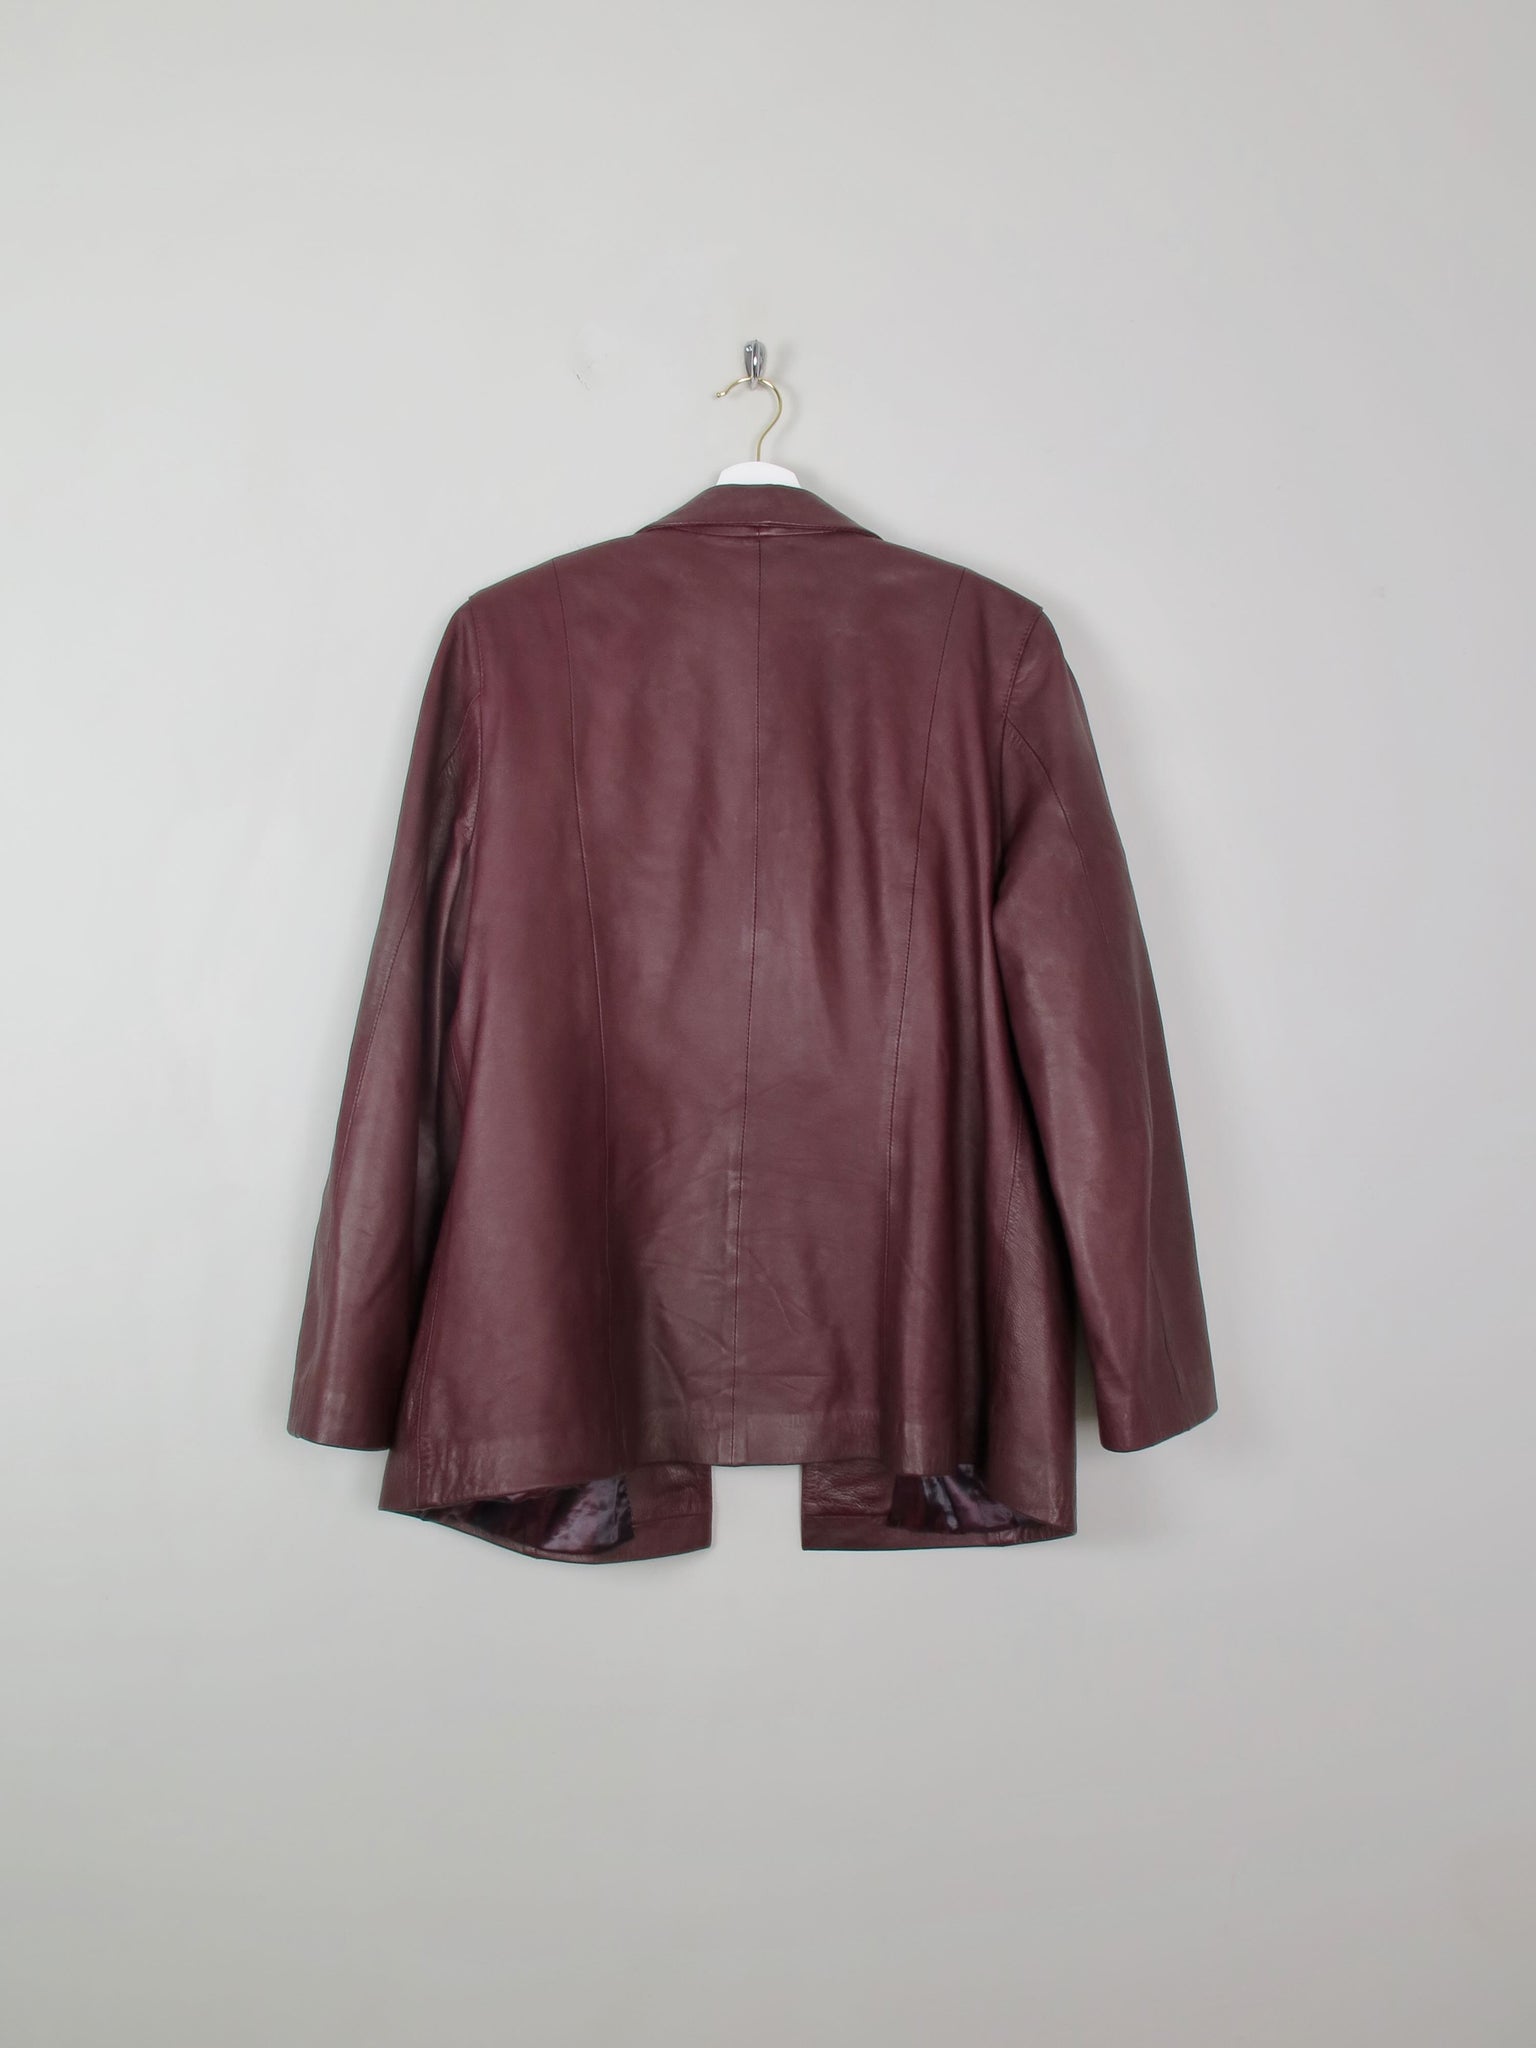 Women's Vintage  Burgundy Leather Jacket L - The Harlequin